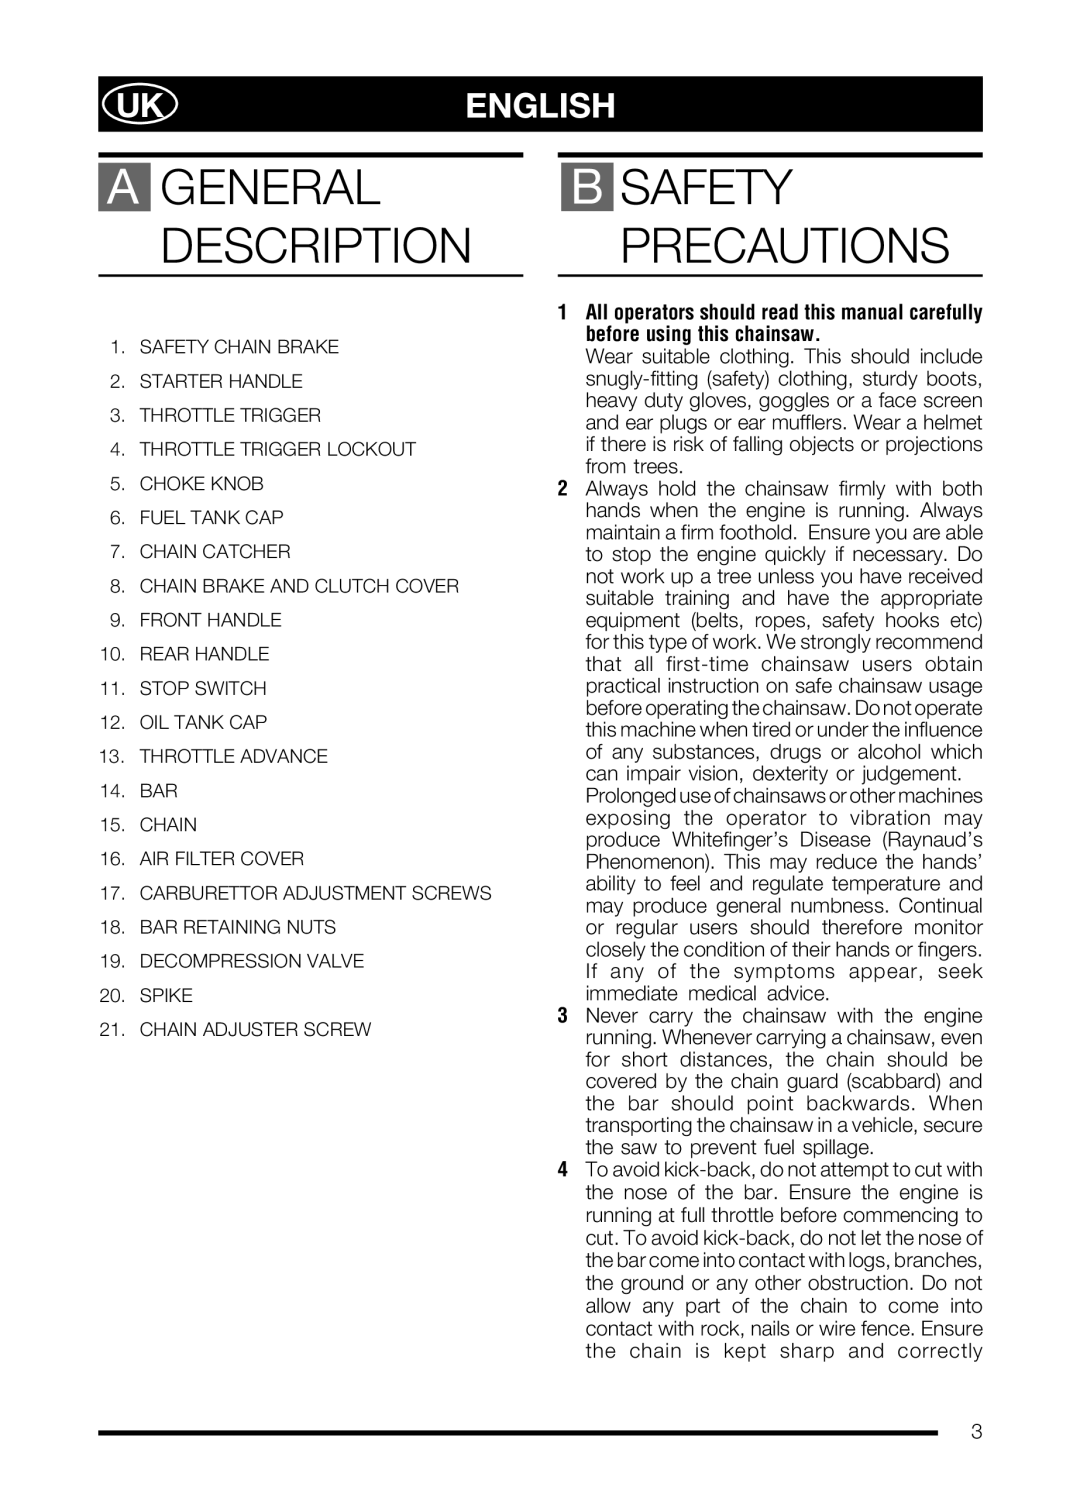 McCulloch PRO MAC 72 manual Ukenglish, B Safety Precautions, A General Description 